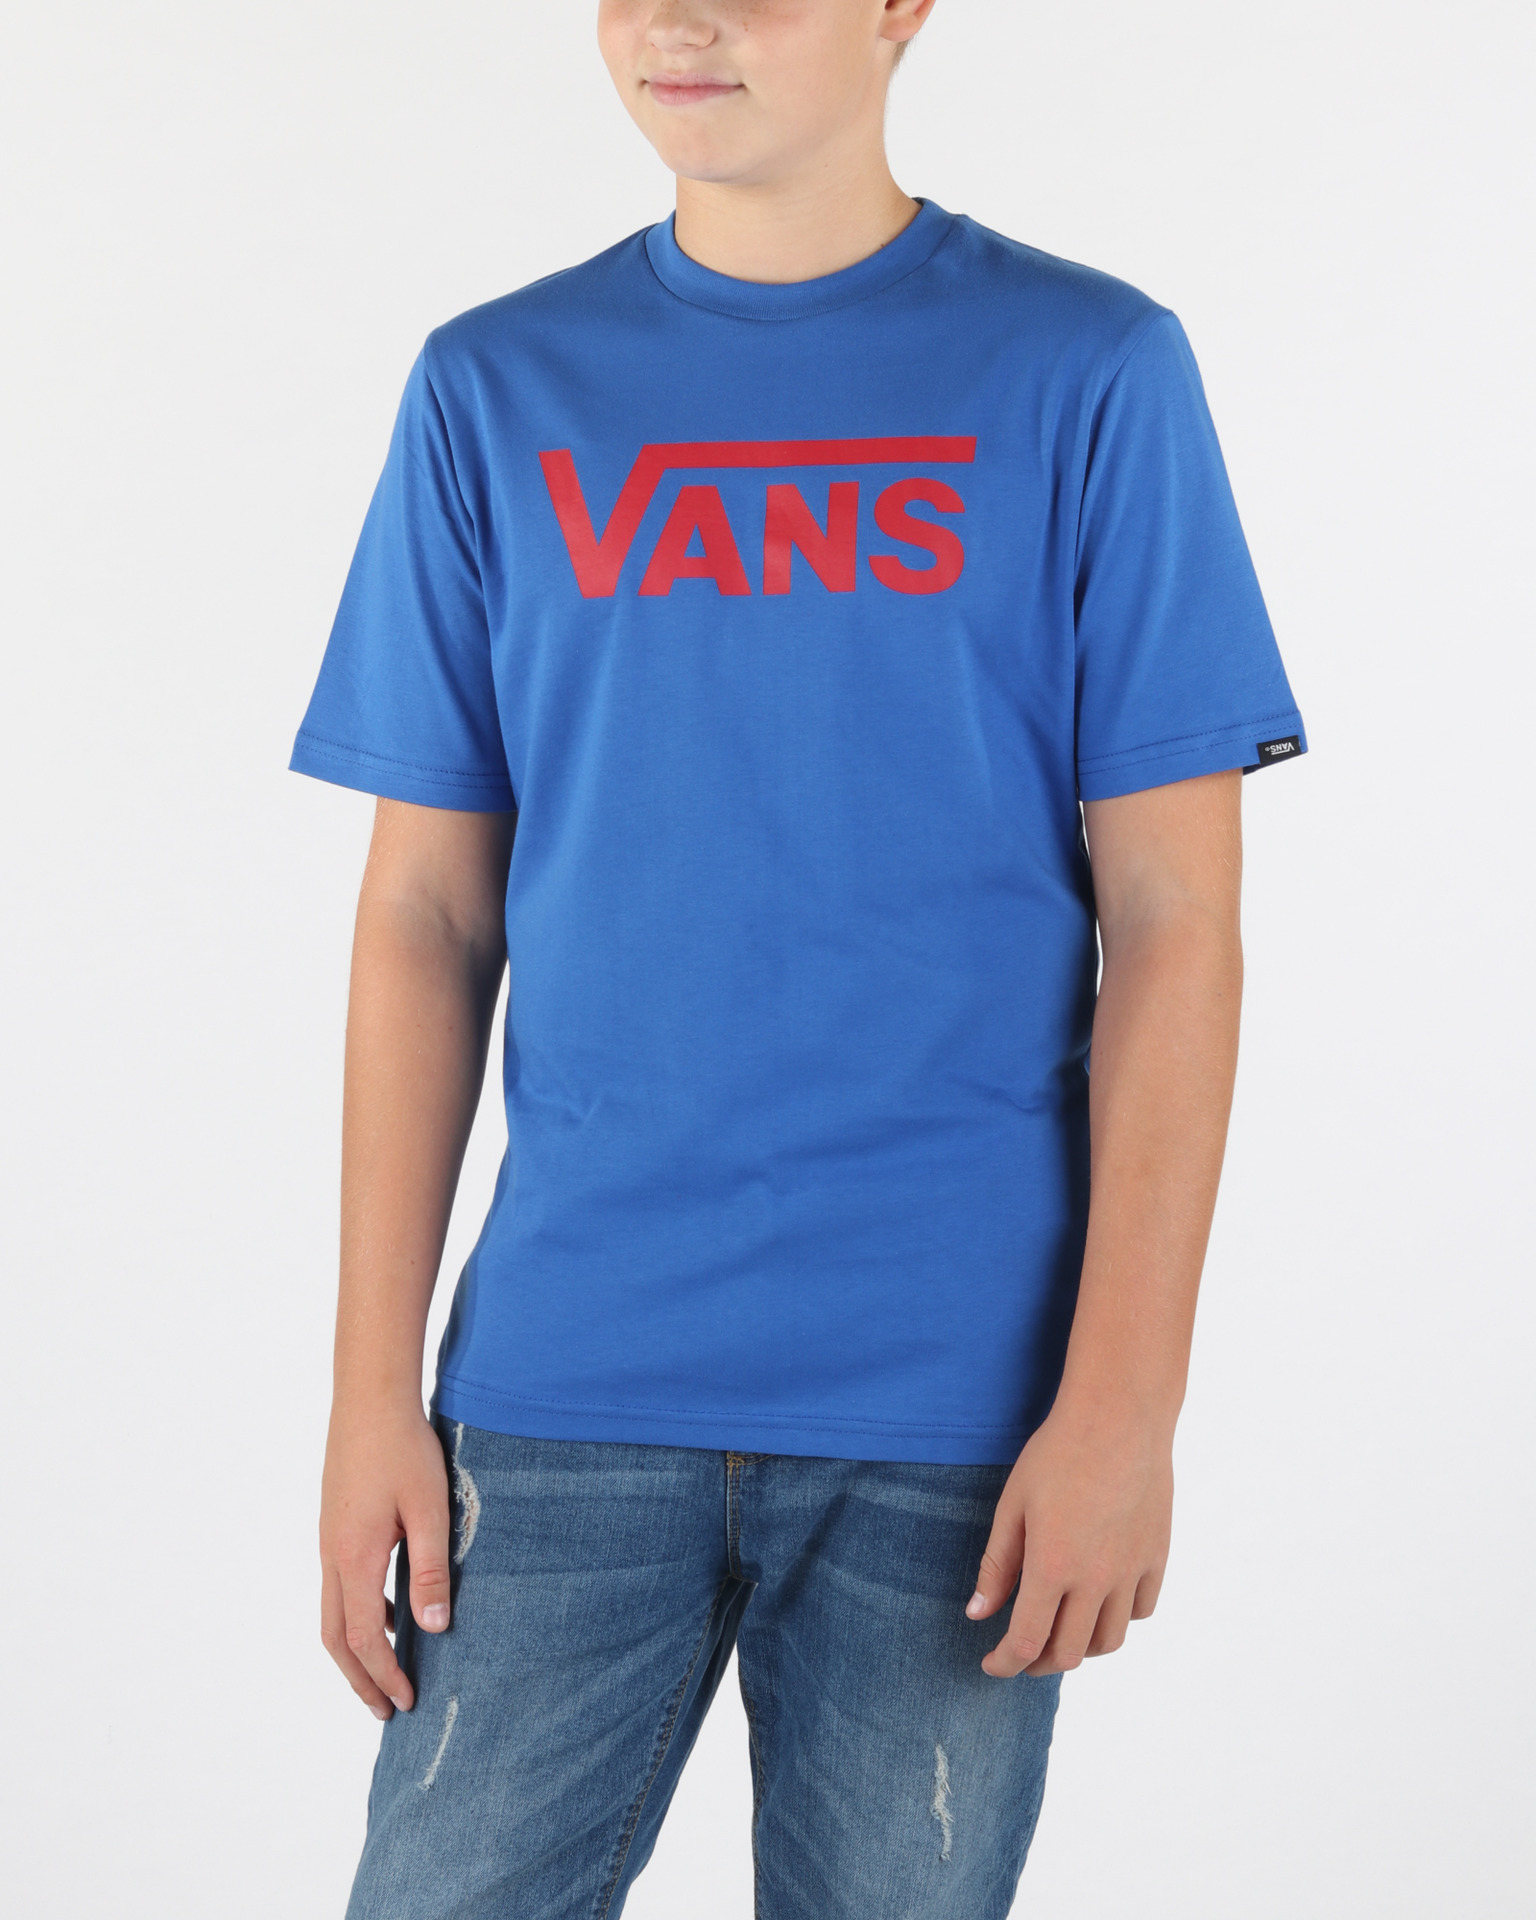 Vans - Kids T-shirt